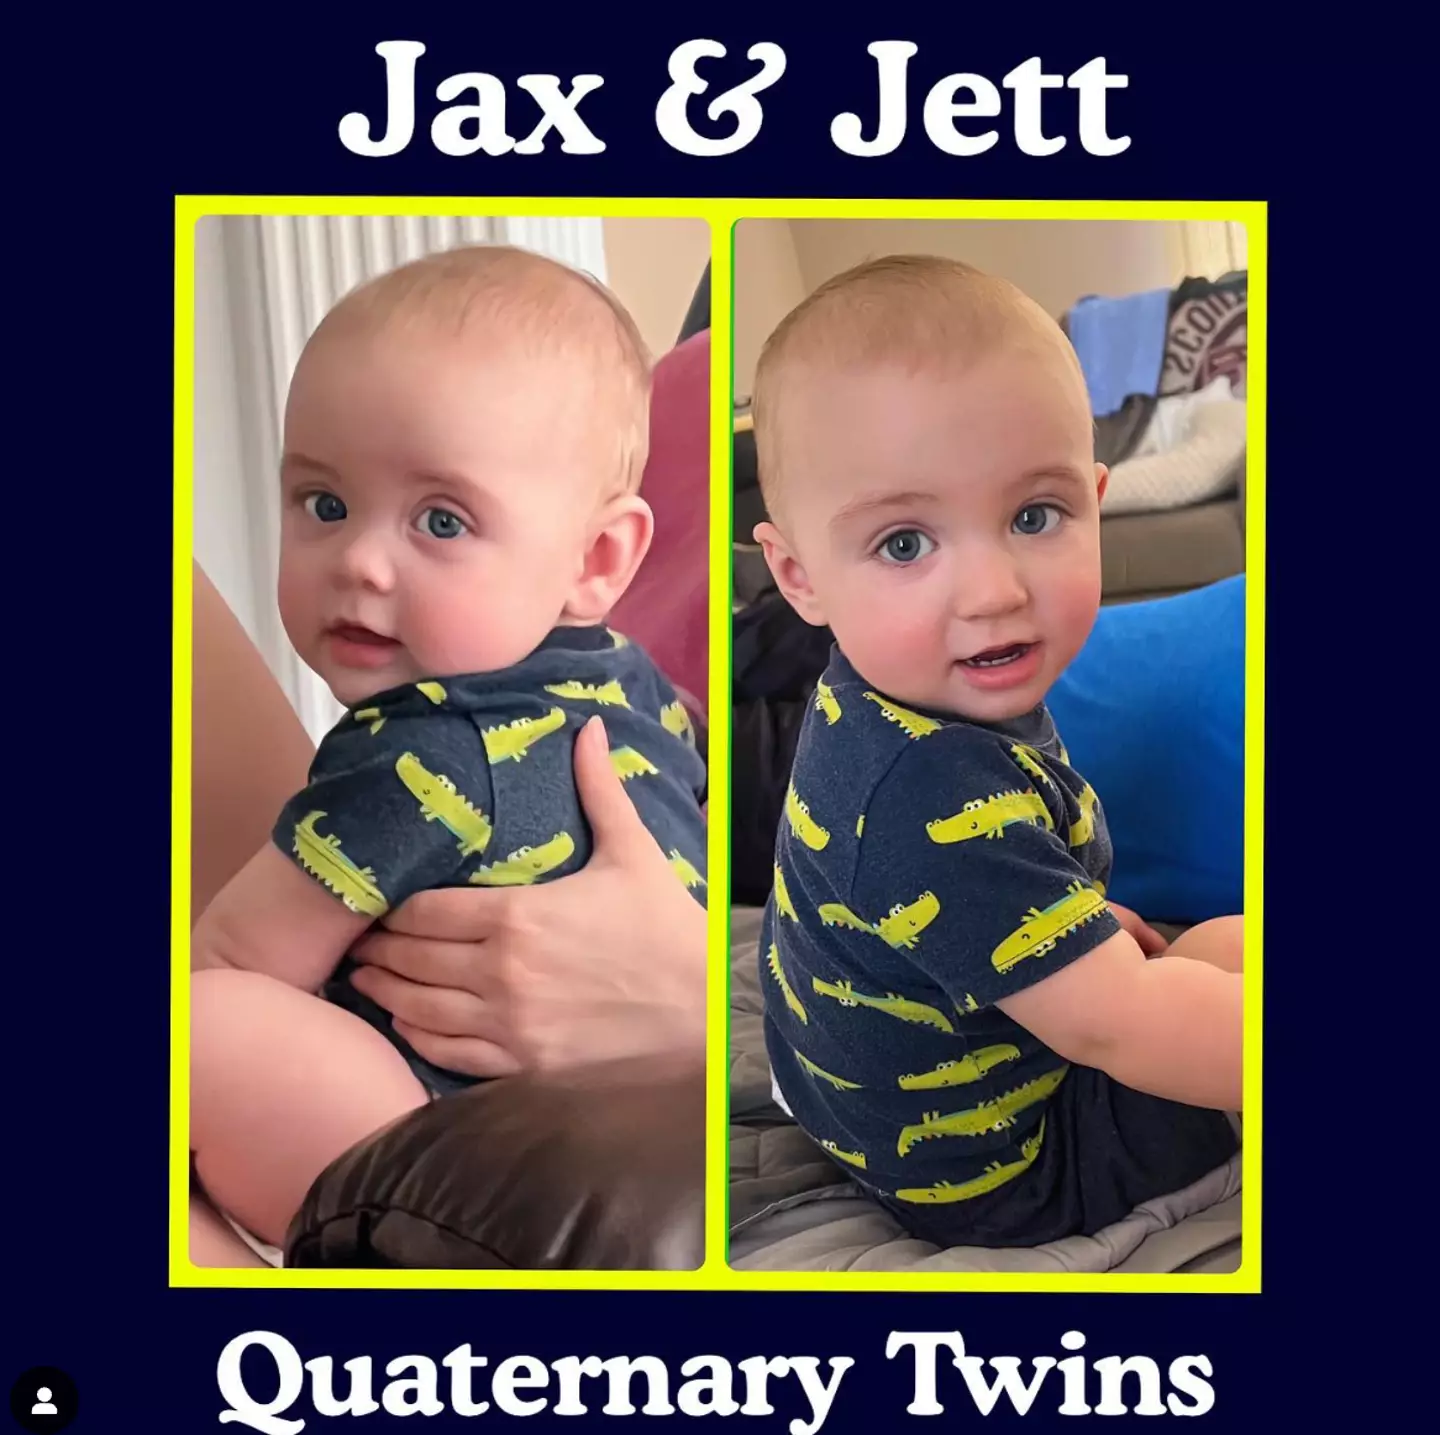 Jax and Jett were born just weeks apart.